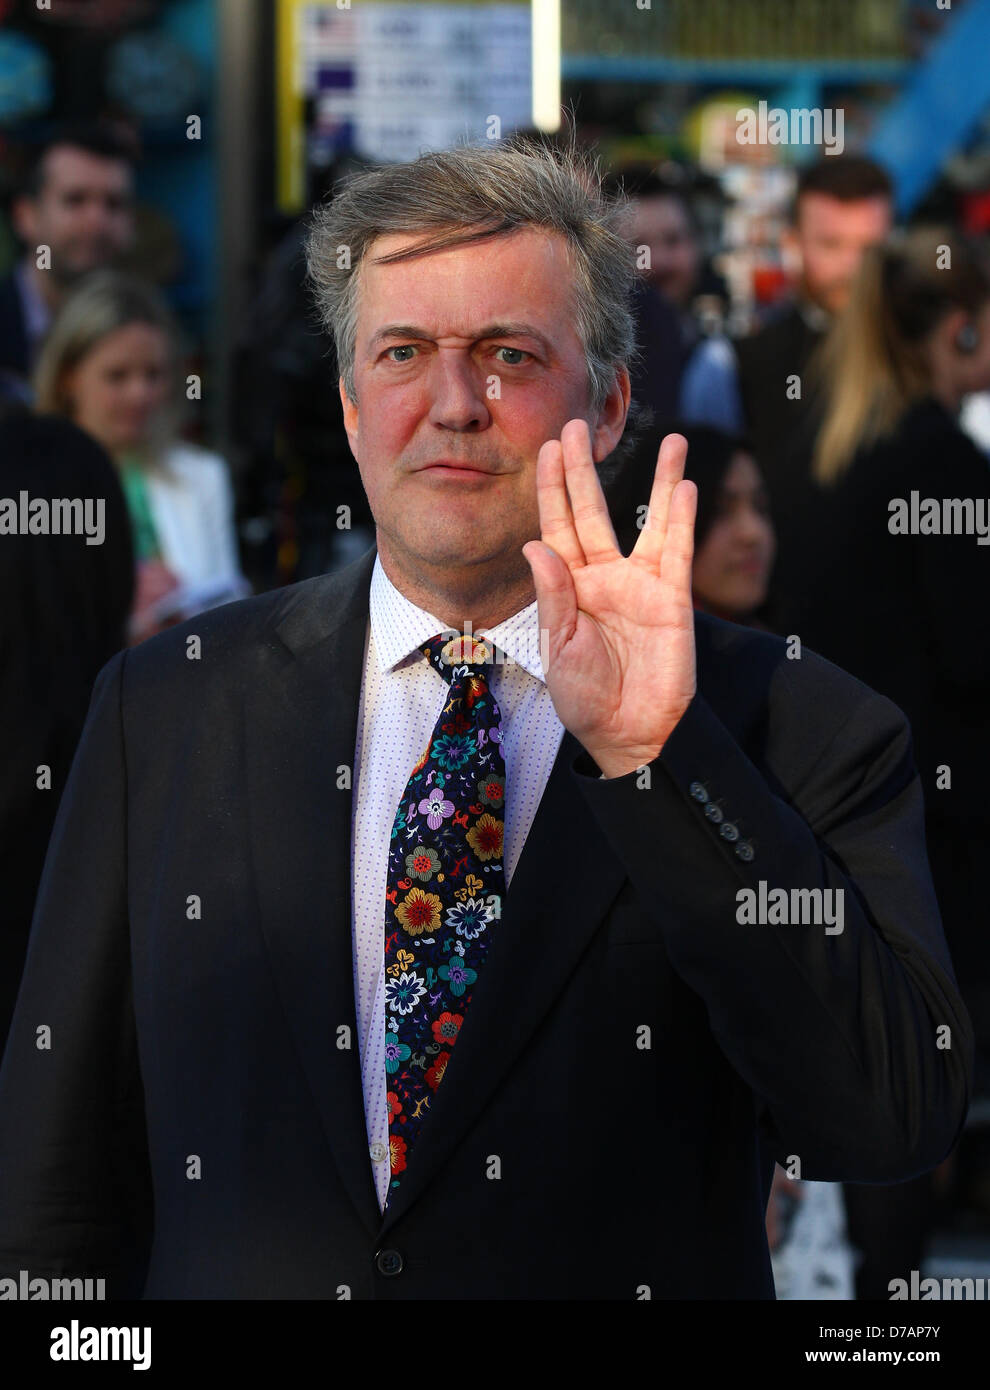 Londra, UK, 2 maggio, 2013: Stephen Fry assiste il Regno Unito Premiere di Star Trek nelle tenebre" all'Impero Cinema. Foto Stock